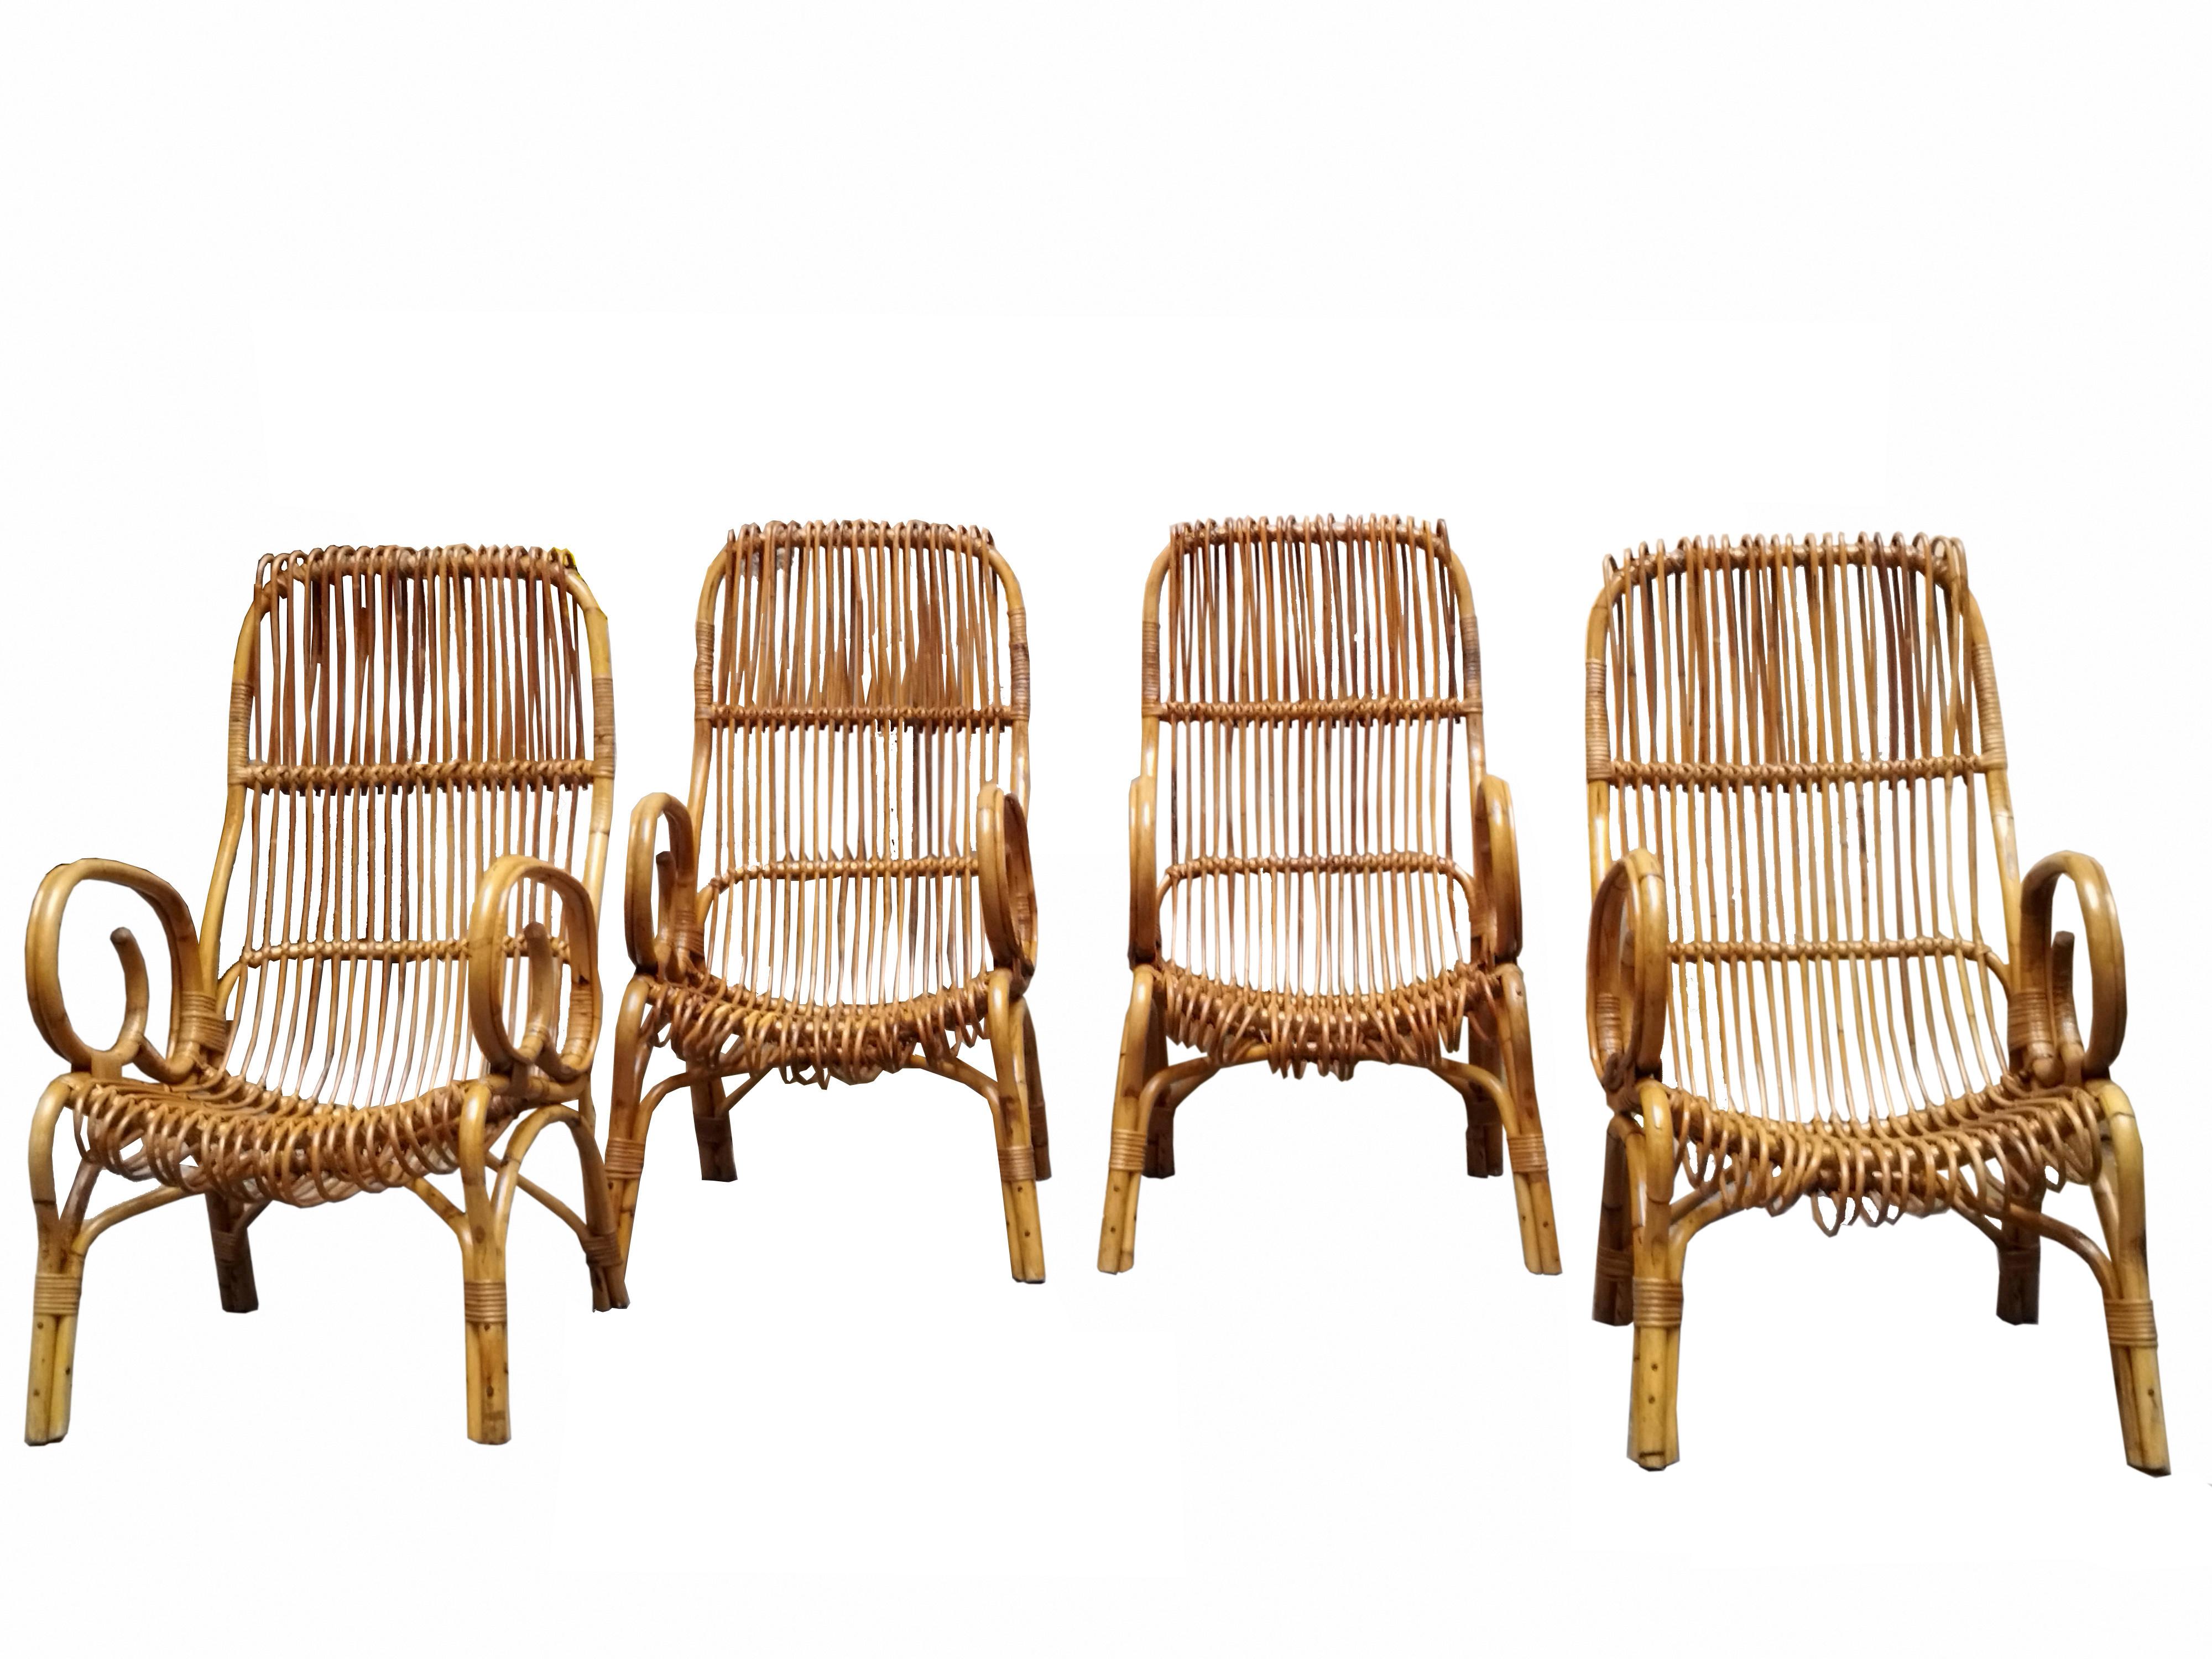 Bambus-Lounge-Set aus den 1960er Jahren, das dem Designer Franco Albini zugeschrieben wird, bestehend aus vier Stühlen/Sesseln und einem runden Tisch. Fein gearbeiteter gebogener Bambusrahmen. In sehr gutem Zustand mit kleinen natürlichen Zeichen